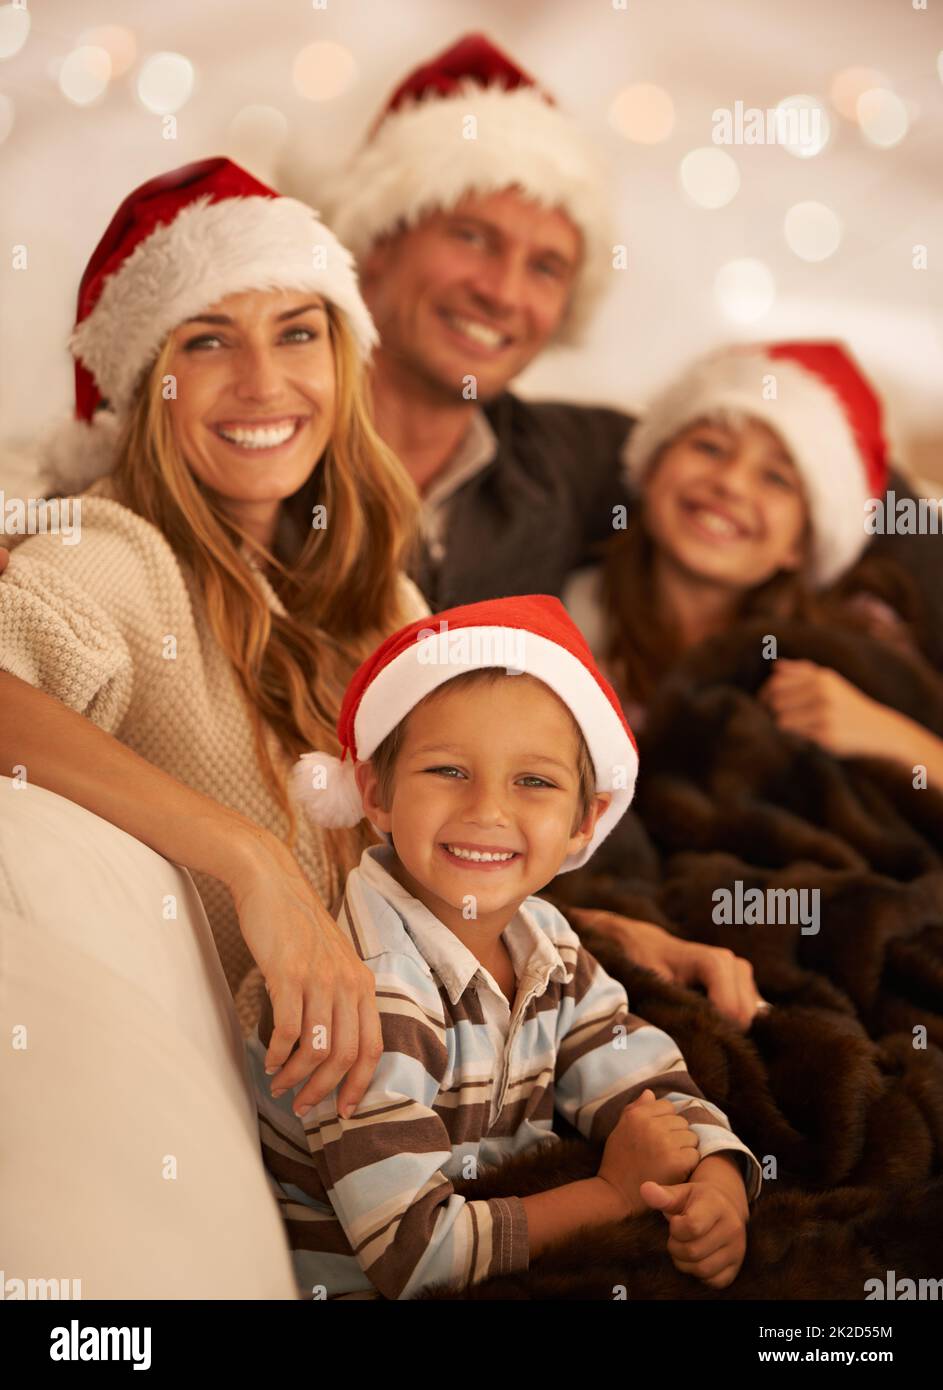 Allegria di Natale e spirito festivo. Ritratto di una giovane famiglia felice il giorno di Natale. Foto Stock